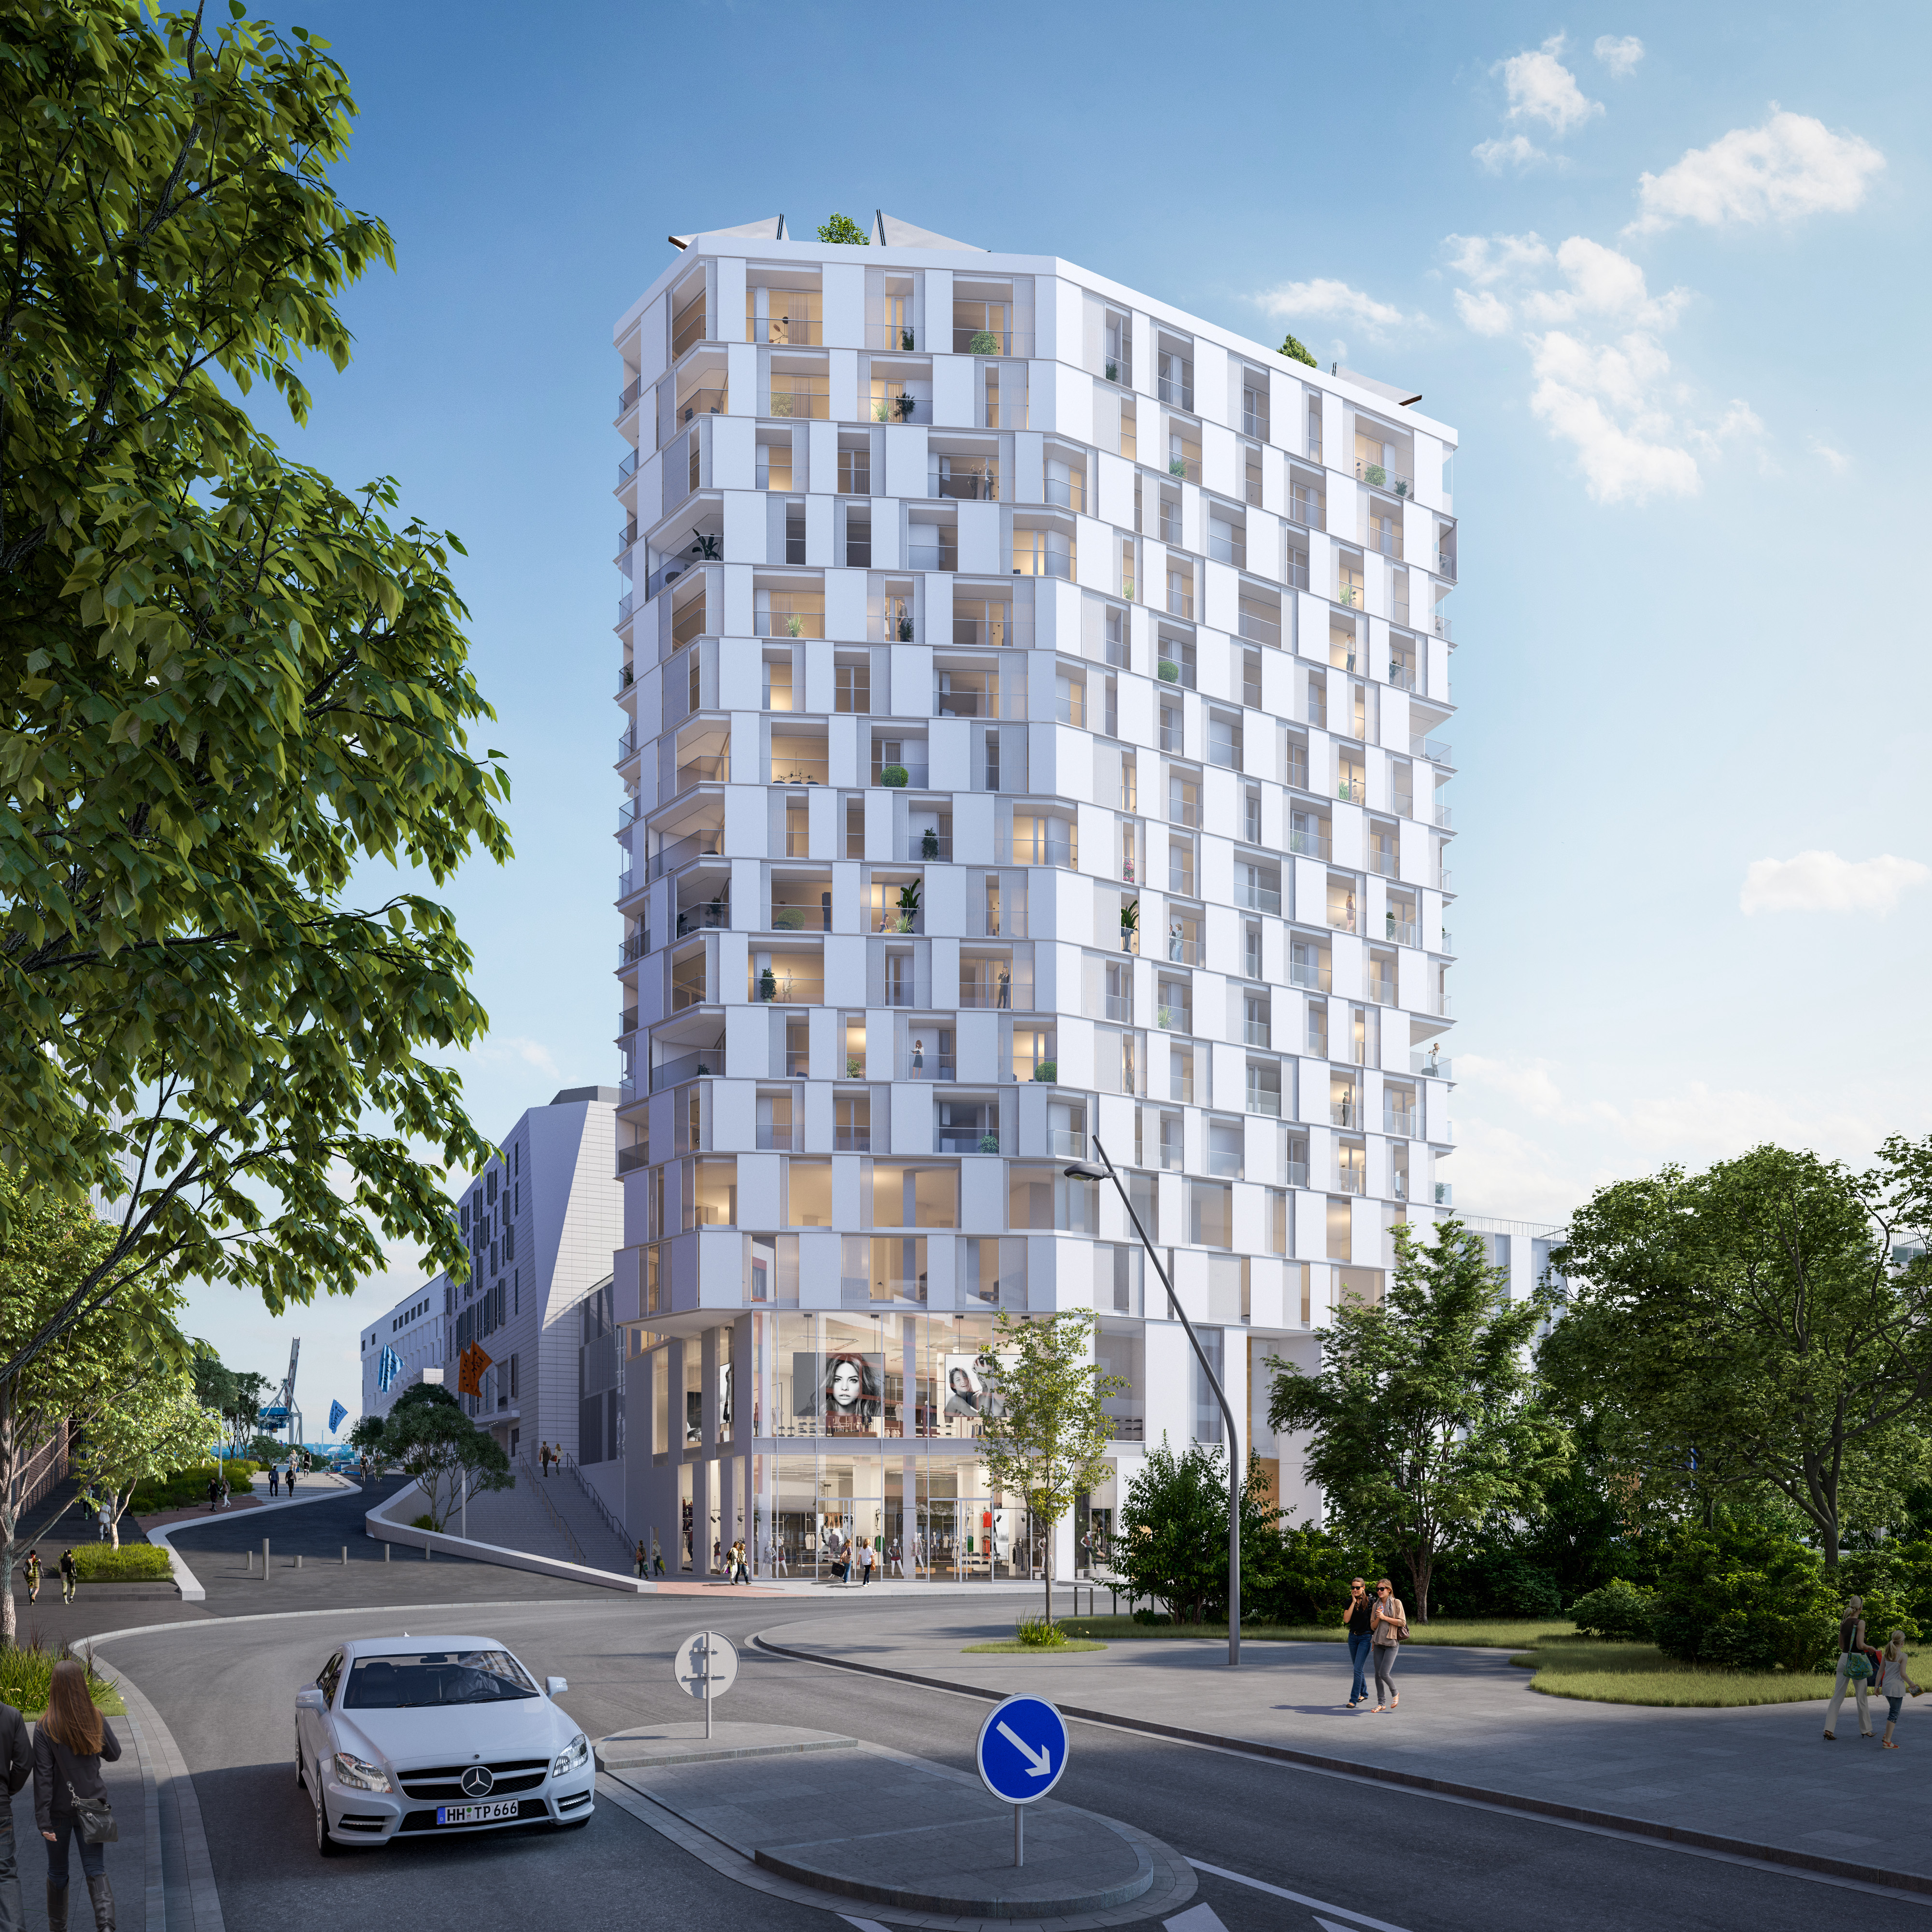 The Lyte Neubauprojekt Hamburg Hafencity